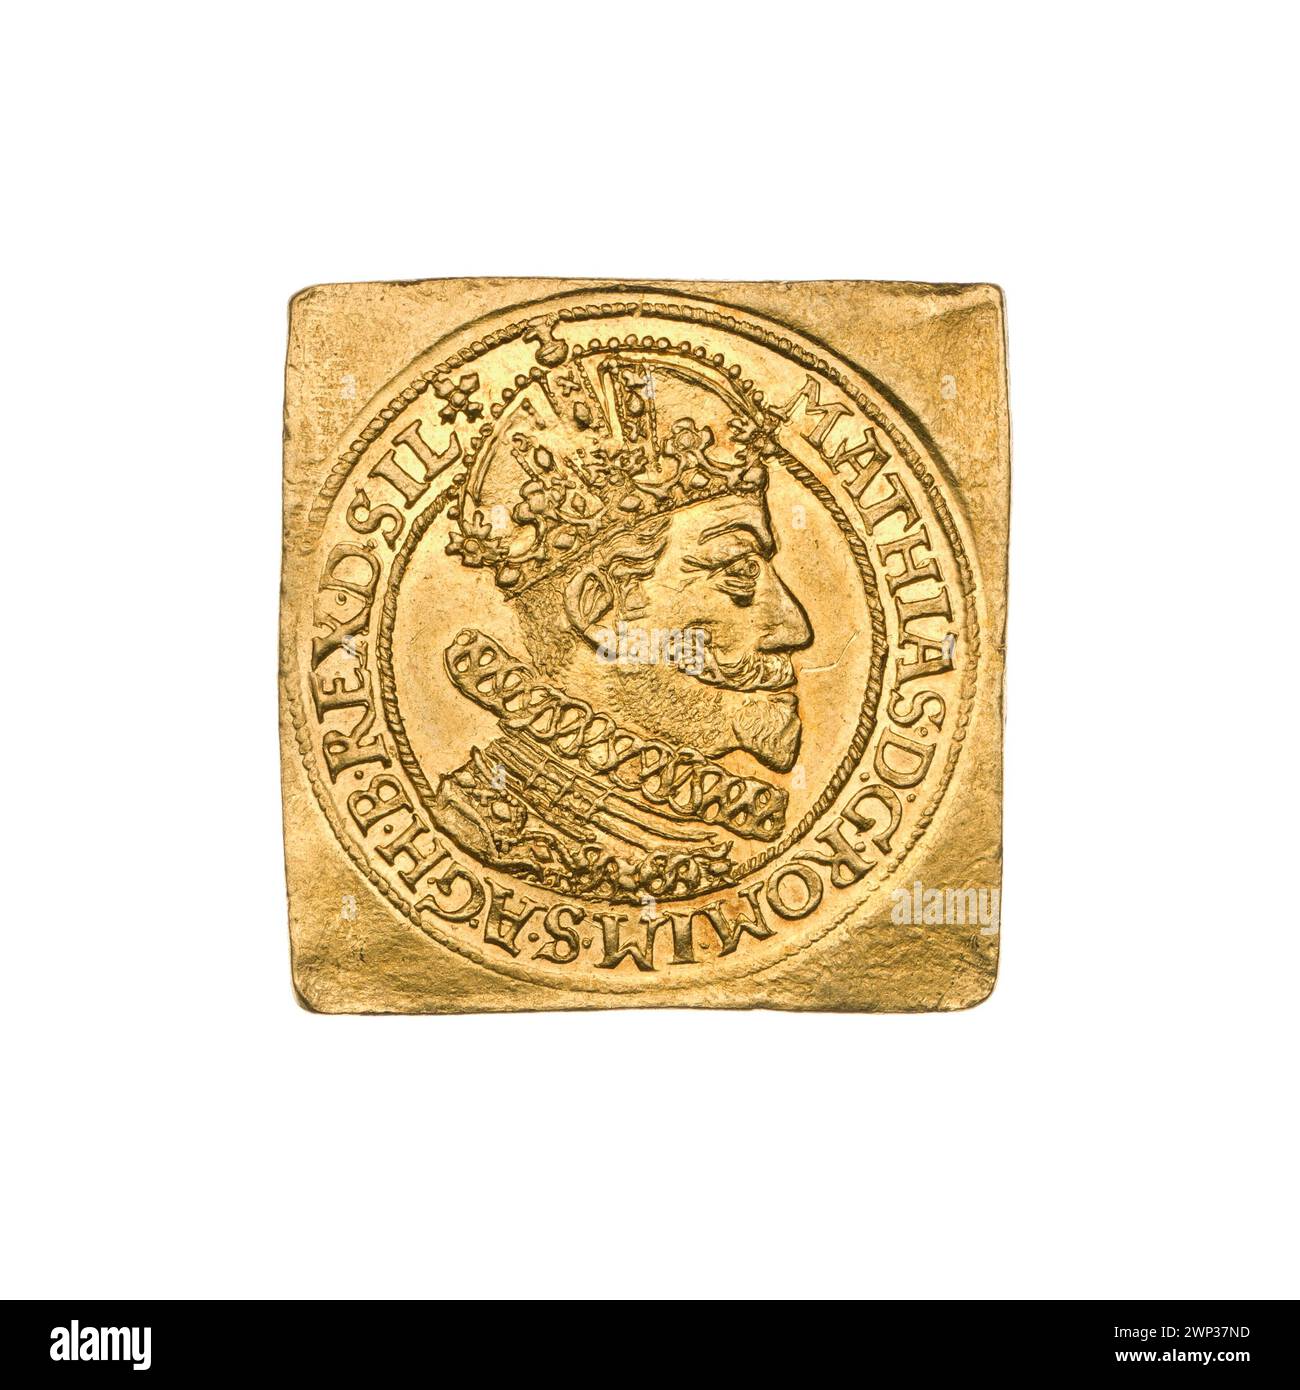 2 DUCATES DELLA CLIP; Maciej II Habsburg (imperatore romano-tedesco; 1557-1619); 1617 (1617-00-00-1617-00-00-00); Habsburg (famiglia), Maciej II (imperatore romano-tedesco-1557-1619), Maciej II (imperatore romano-tedesco-1557-1619)-iconografia, ordine della Runa d'oro, R8 (rarità), Wrocław (Herb), Klipa, Korona imperiale. corone, scudo alle erbe (iconografo), monete cittadine, ordini, busto, busto maschile, busto maschile in crisi, busto maschile in armatura, ritratto maschile a destra, ritratti, ritratti di governanti, ritratti di governanti, scudo a quattro piste con campo cardiaco, stemma, scudi Foto Stock